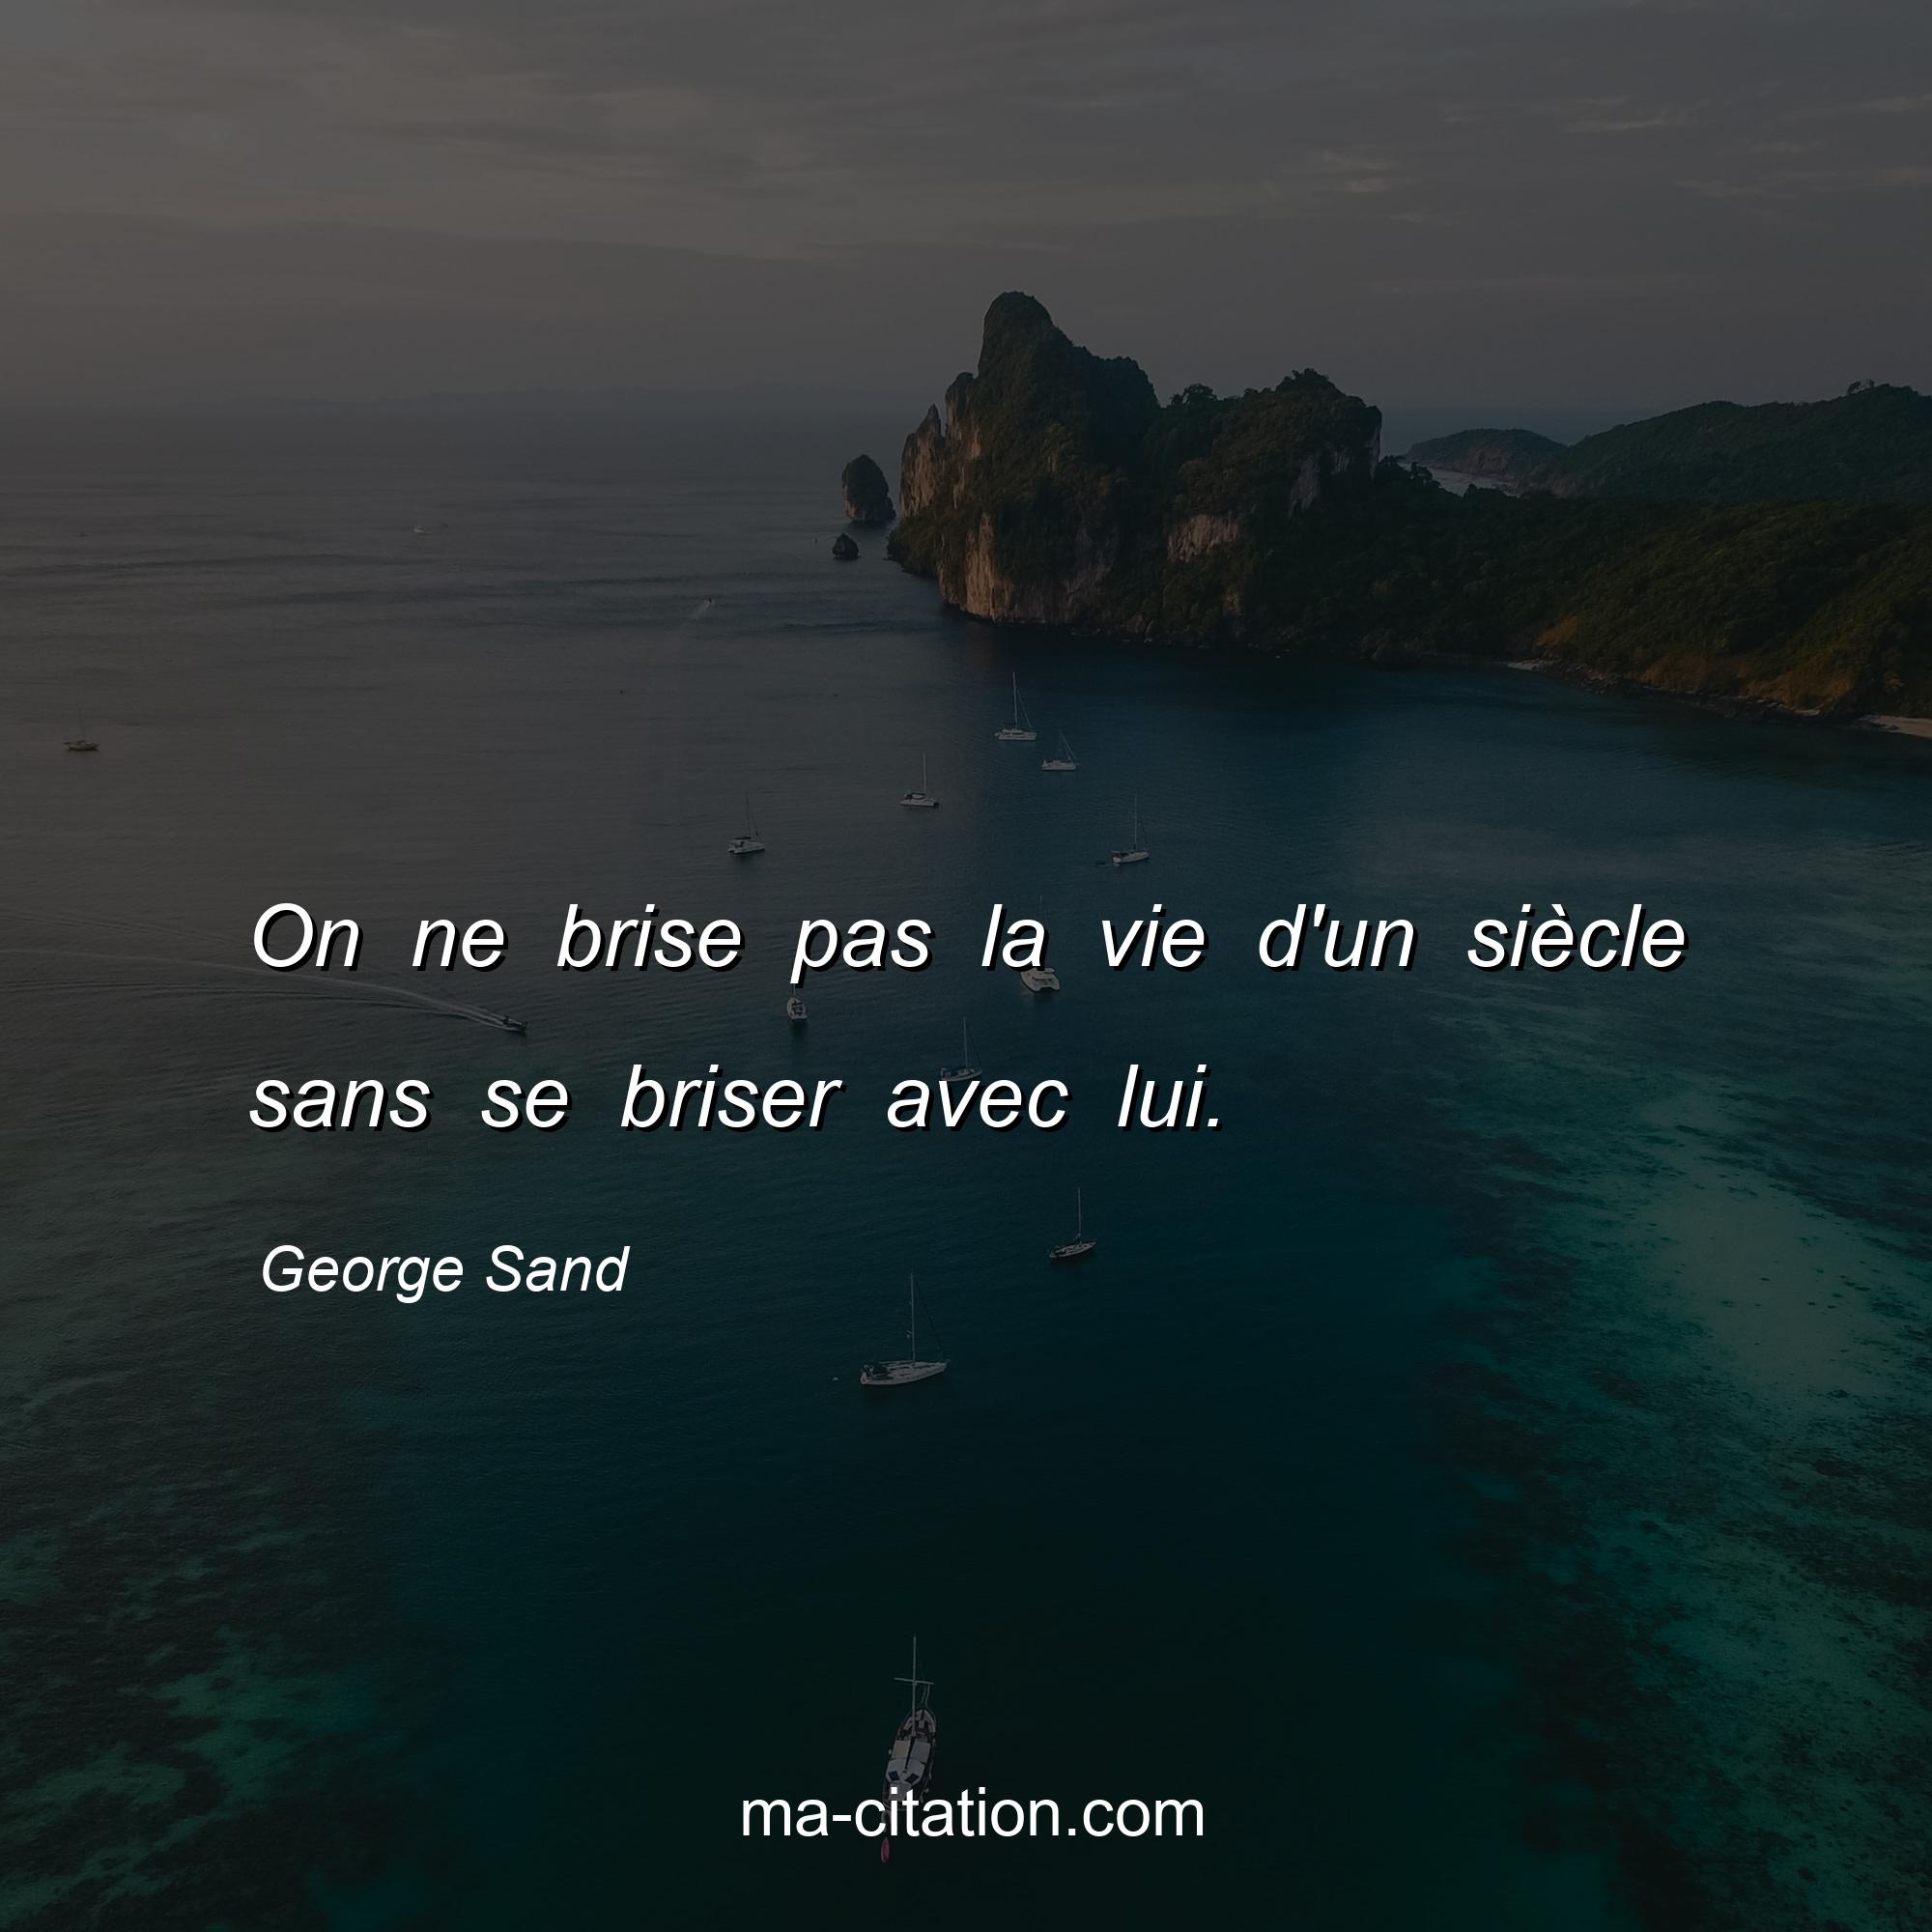 George Sand : On ne brise pas la vie d'un siècle sans se briser avec lui.